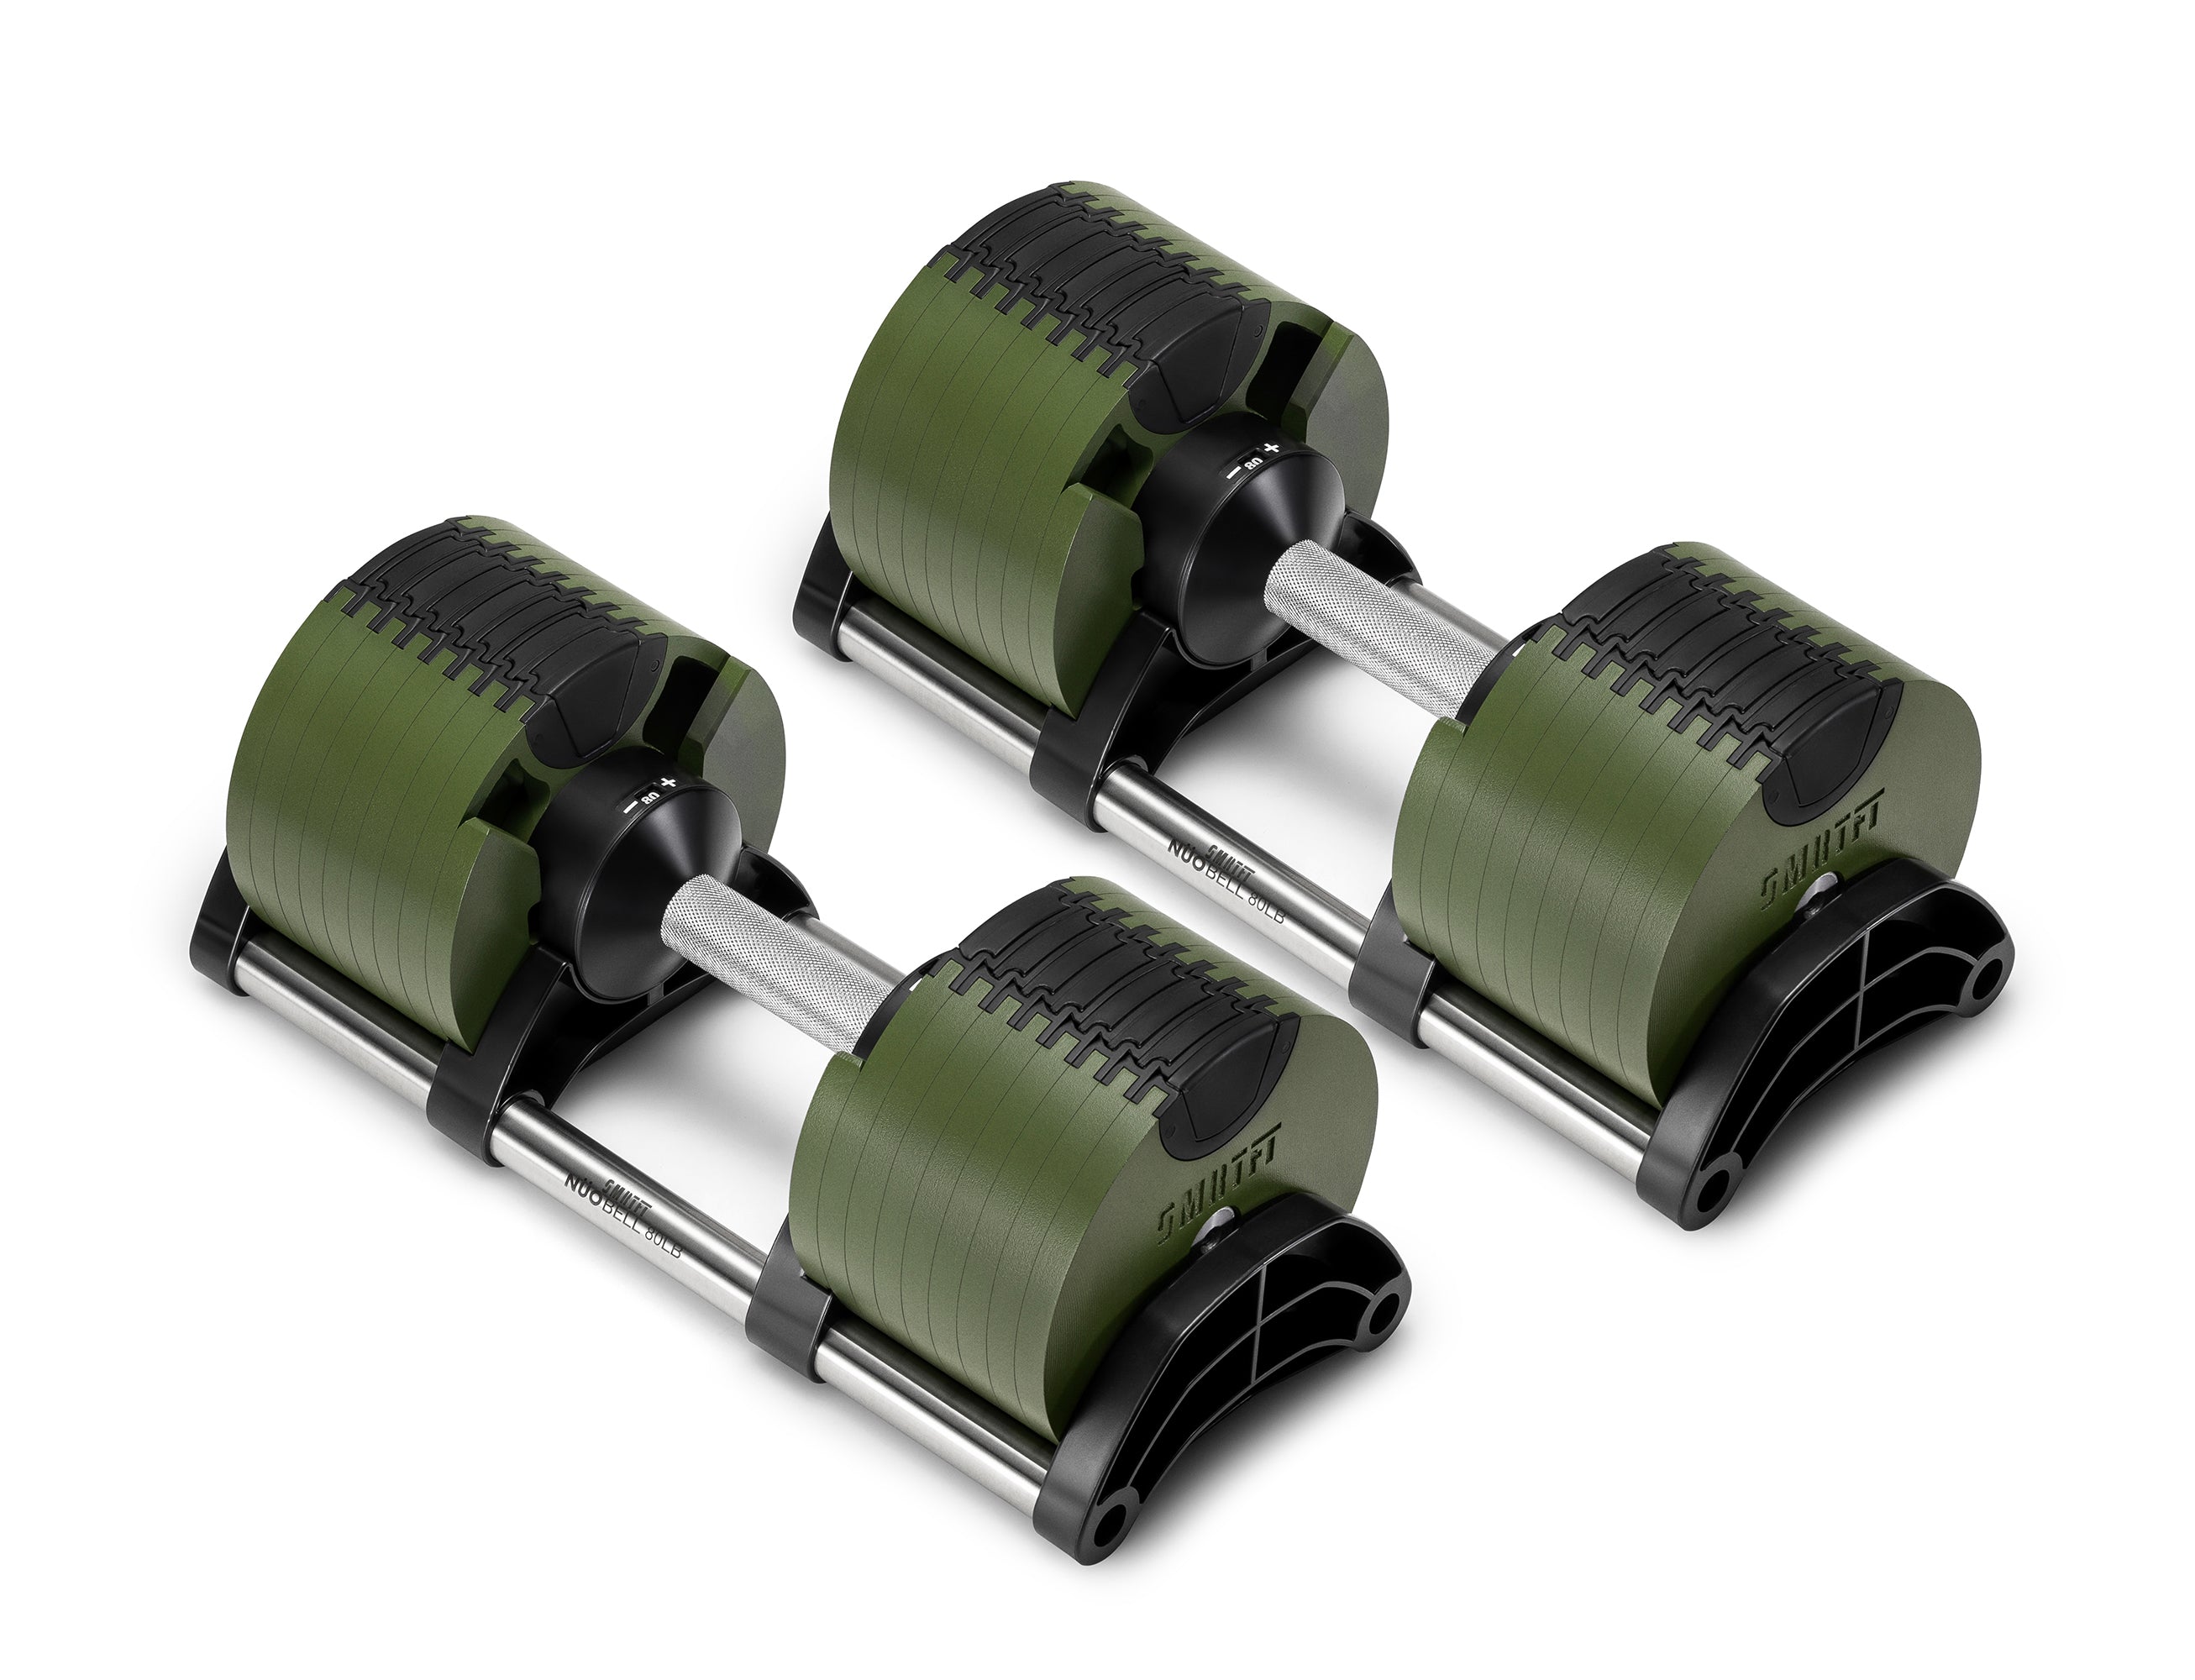 Green & Black Adjustable Dumbbells Set At SMRTFT | Nüobell 80LB Tactical